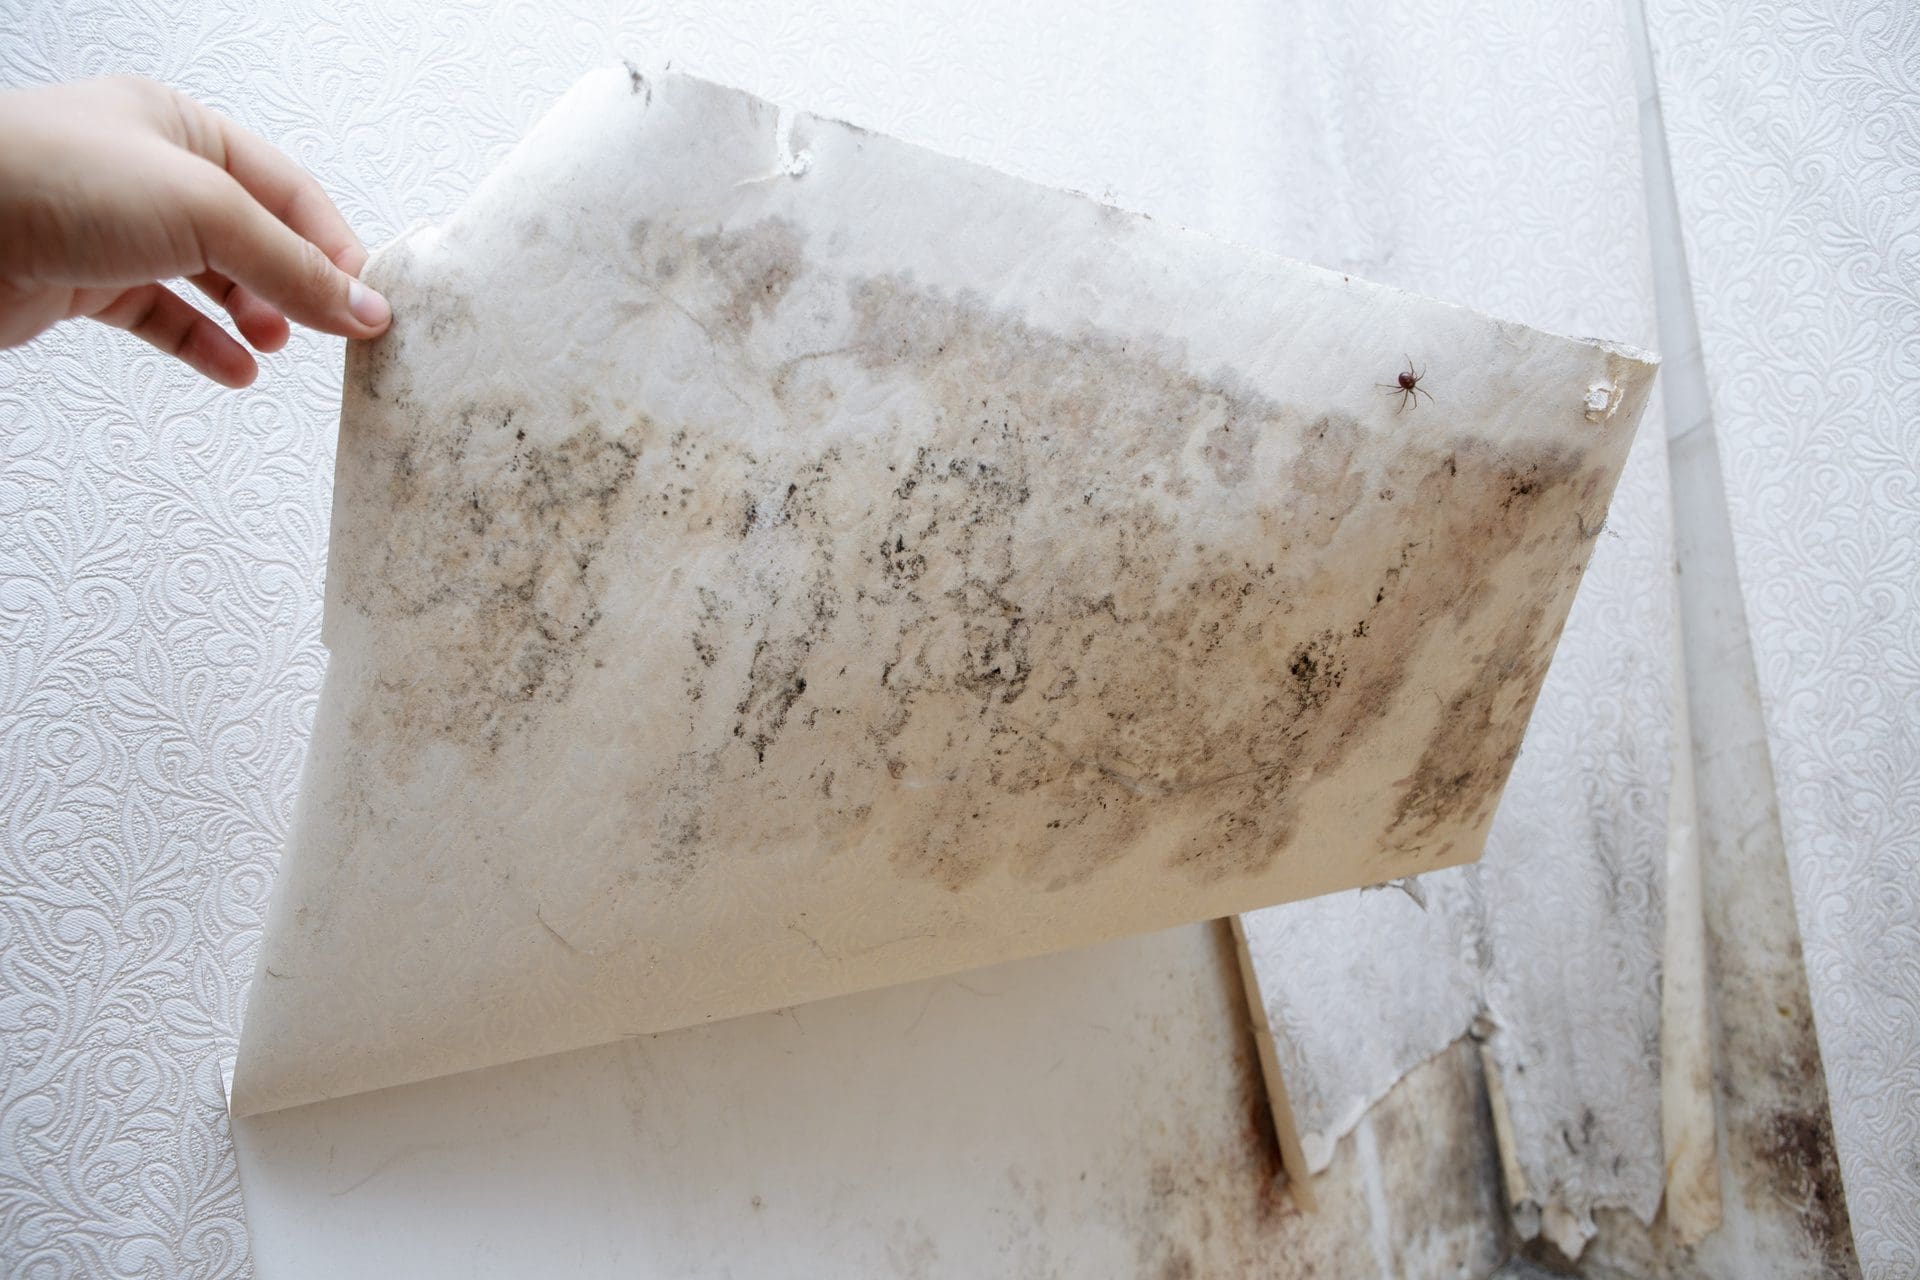 Hausschimmel beseitigen - hier Schimmel an Wand und Tapete (© burdun / stock.adobe.com)